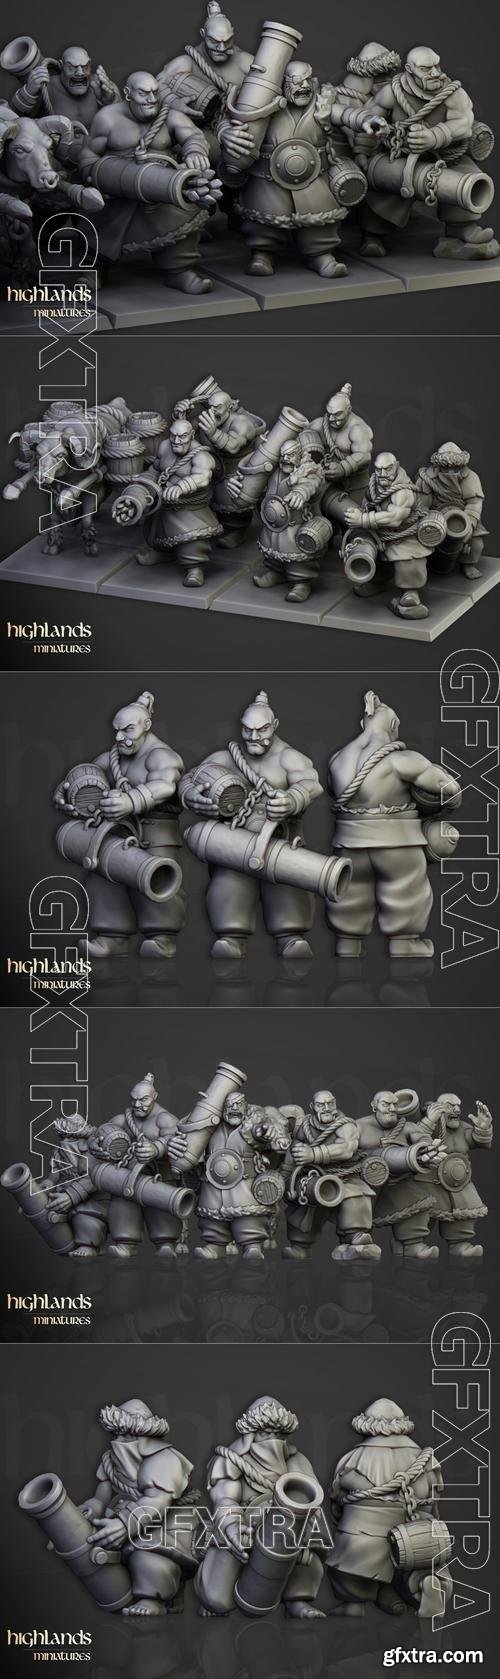 Highlands Miniatures - Khazarian Gunners 3D